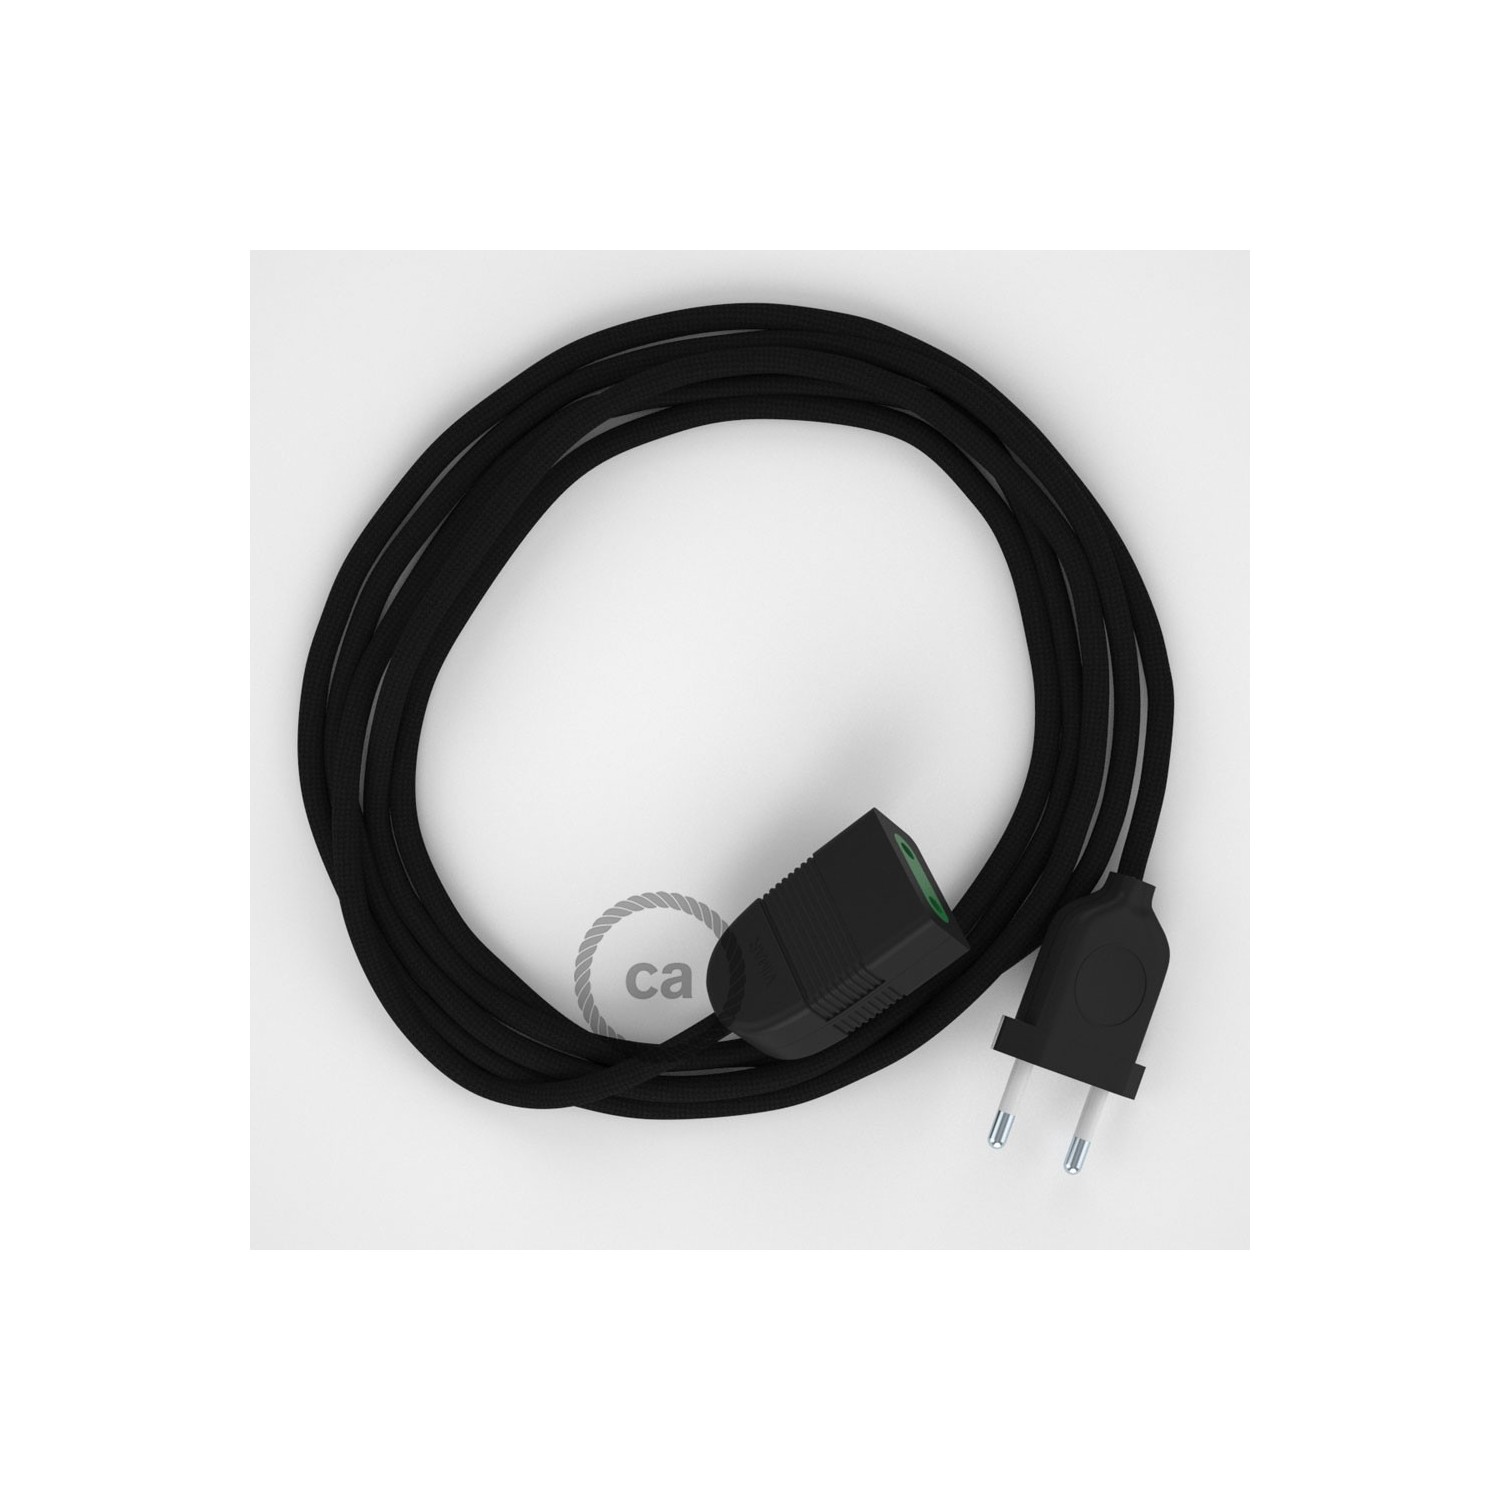 Produžni kabel za napajanje (2P 10A) Crni Rajon RM04 - Made in Italy